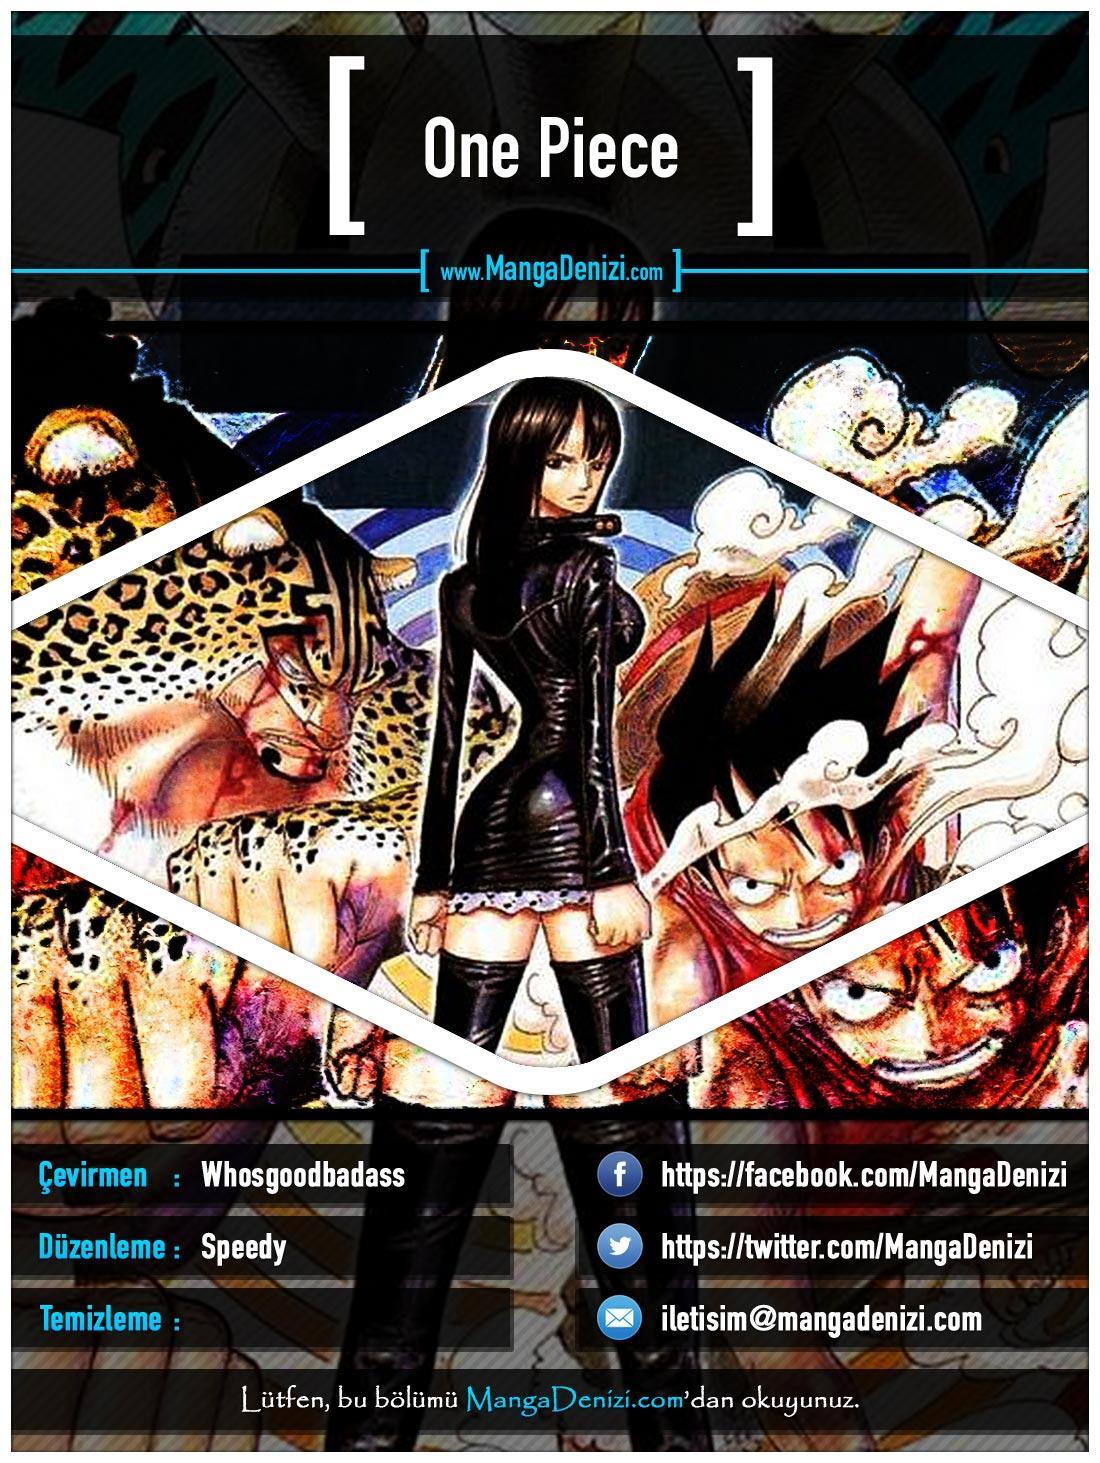 One Piece [Renkli] mangasının 0404 bölümünün 1. sayfasını okuyorsunuz.